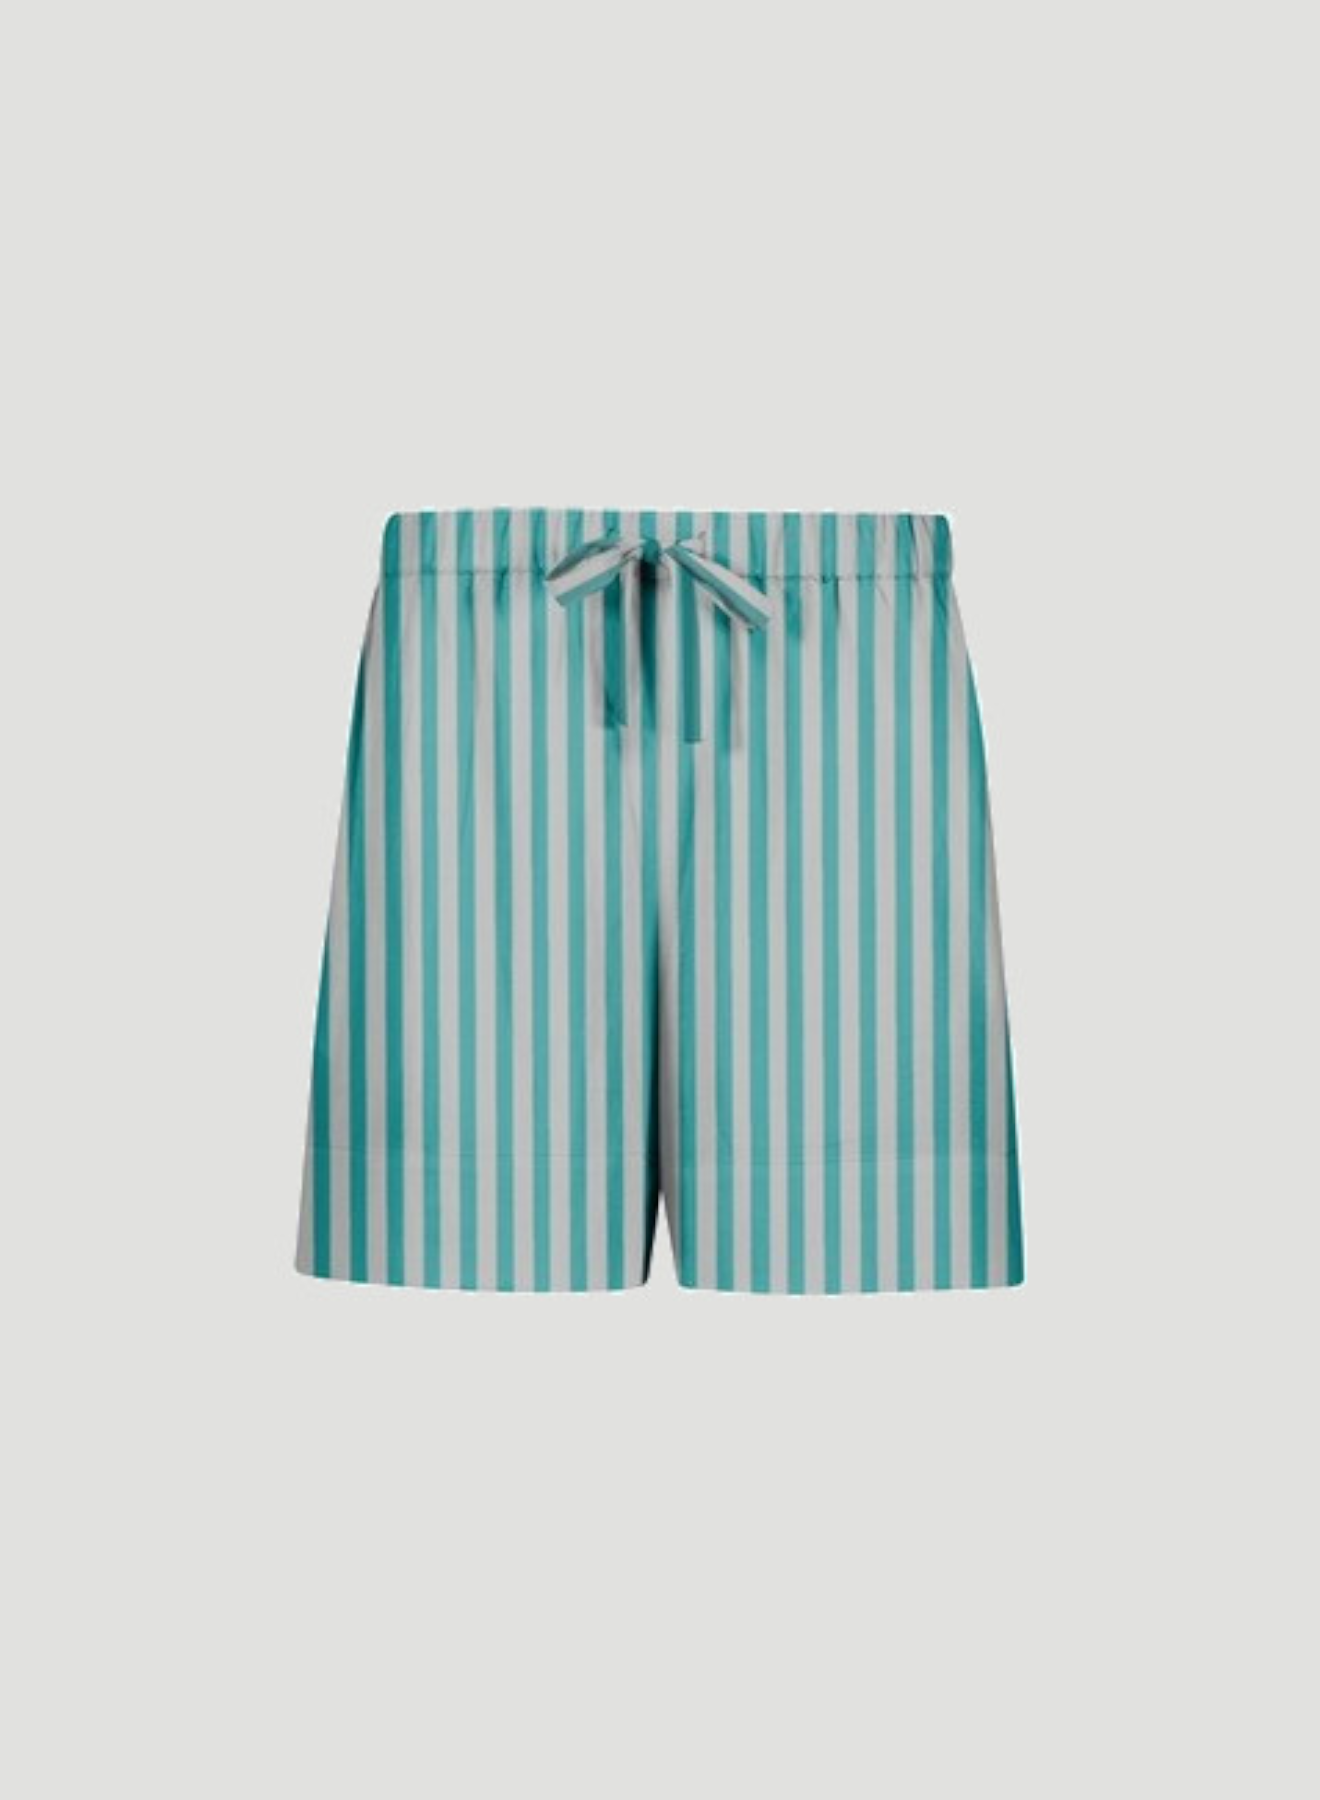 SHADE Italy - Shorts in misto lino